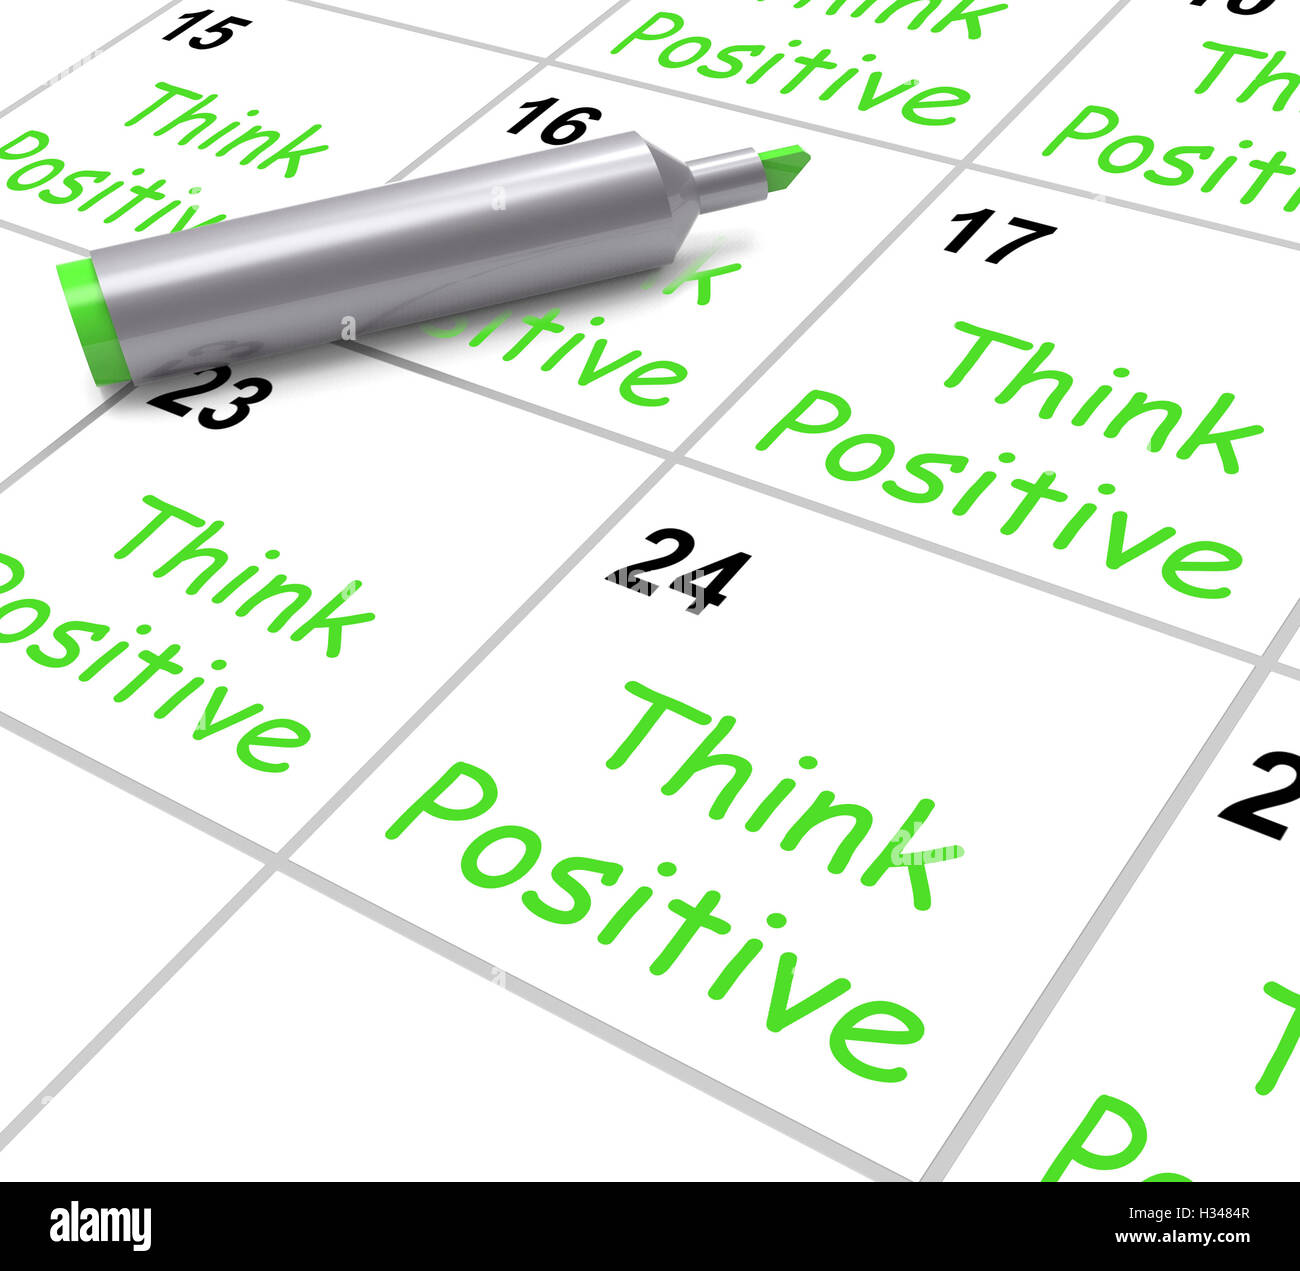 Pensez positif signifie Calendrier d'optimisme et de bonne attitude Banque D'Images